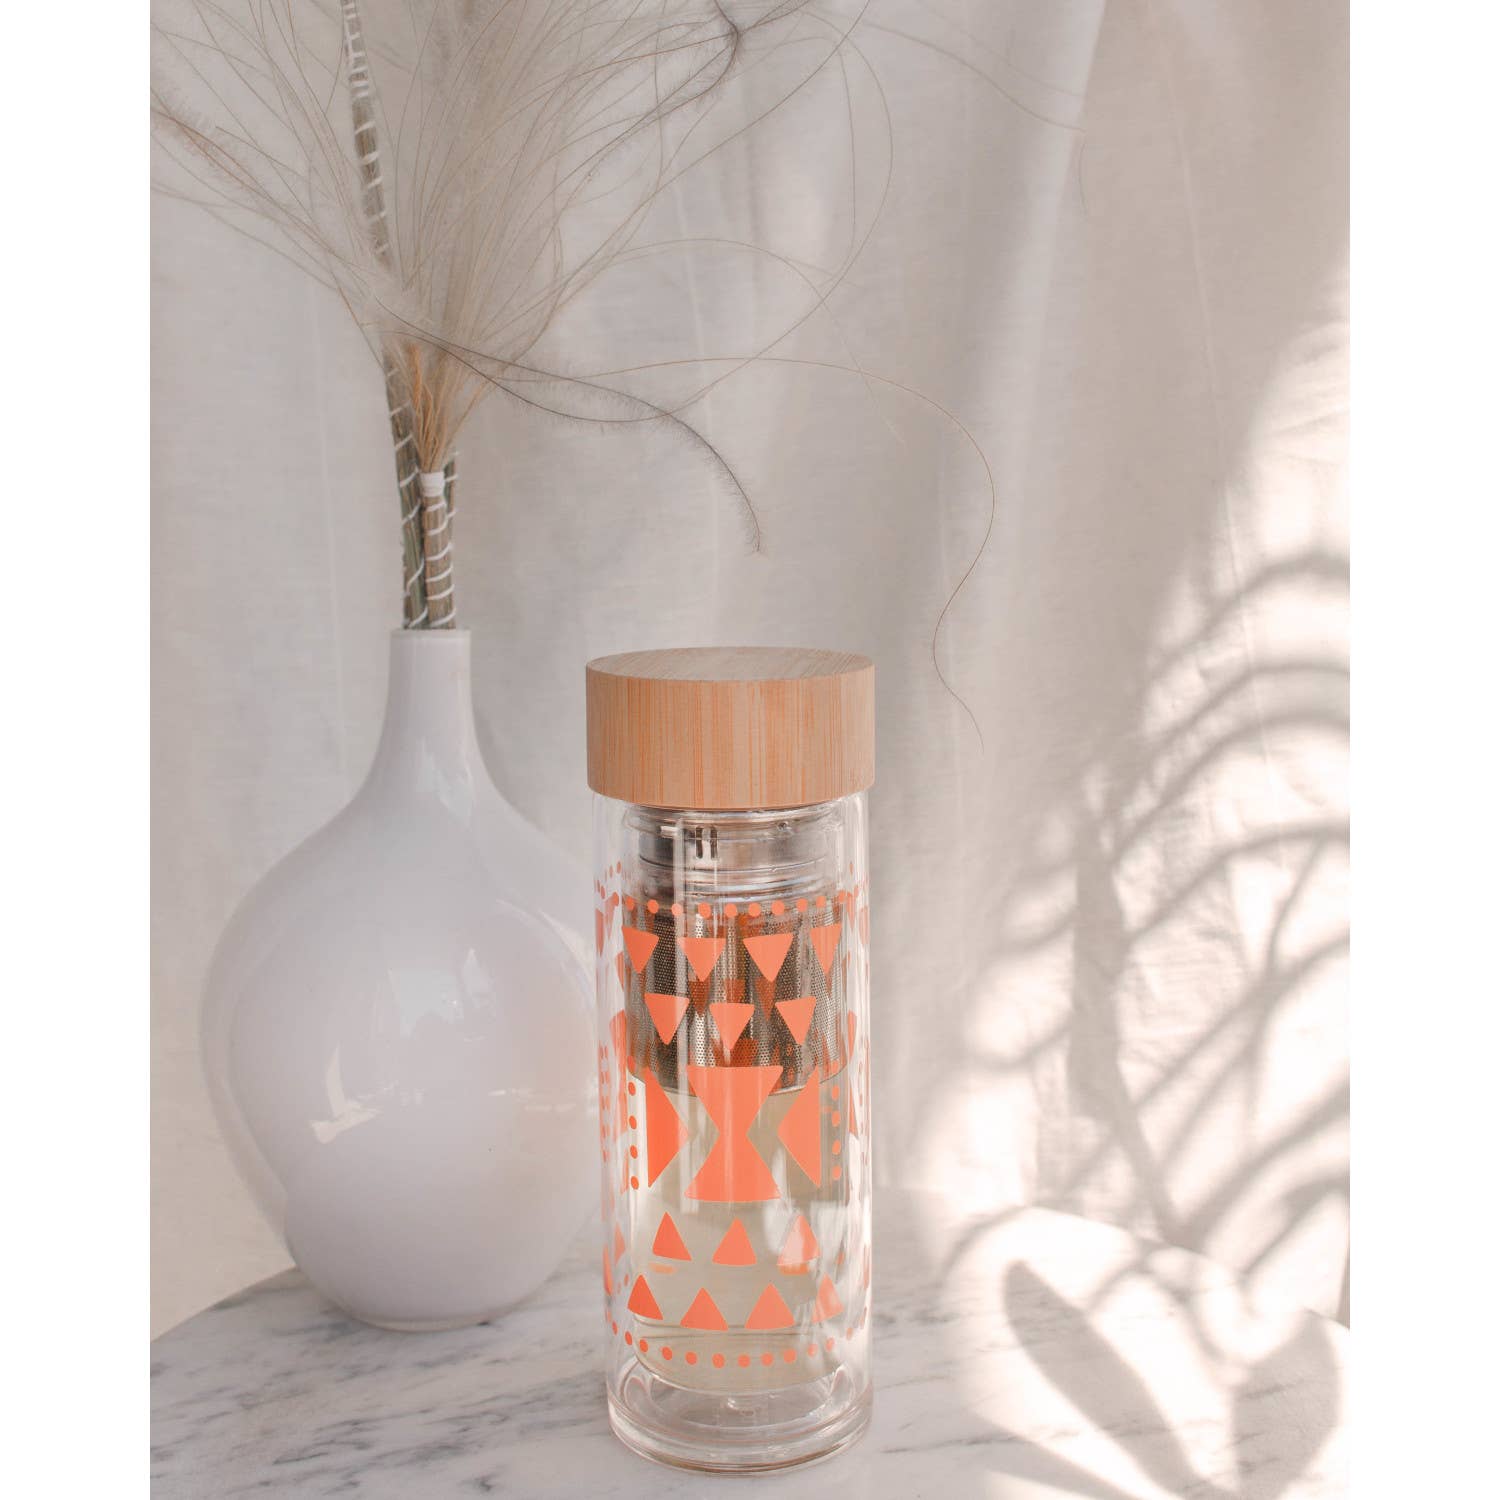 Pink Sustain Double Glass Tea Infuser Bottle | Loose Leaf Tea Holder Steeper Strainer Filter